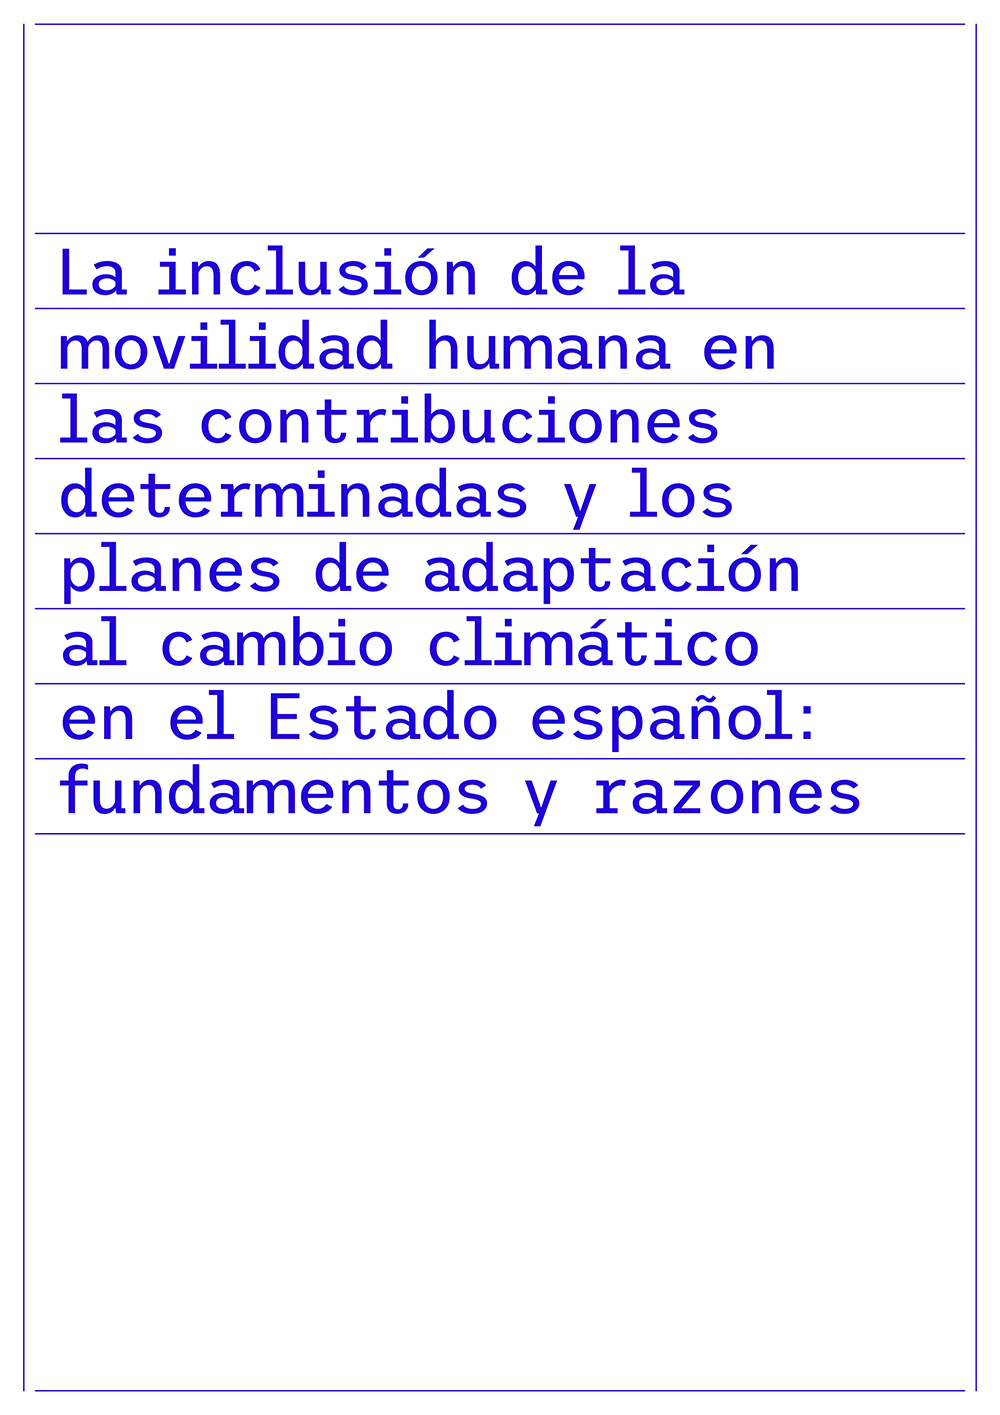 La inclusió de la mobilitat humana en les contribucions determinades i els plans d’adaptació al canvi climàtic a l’Estat espanyol: fonaments i raons